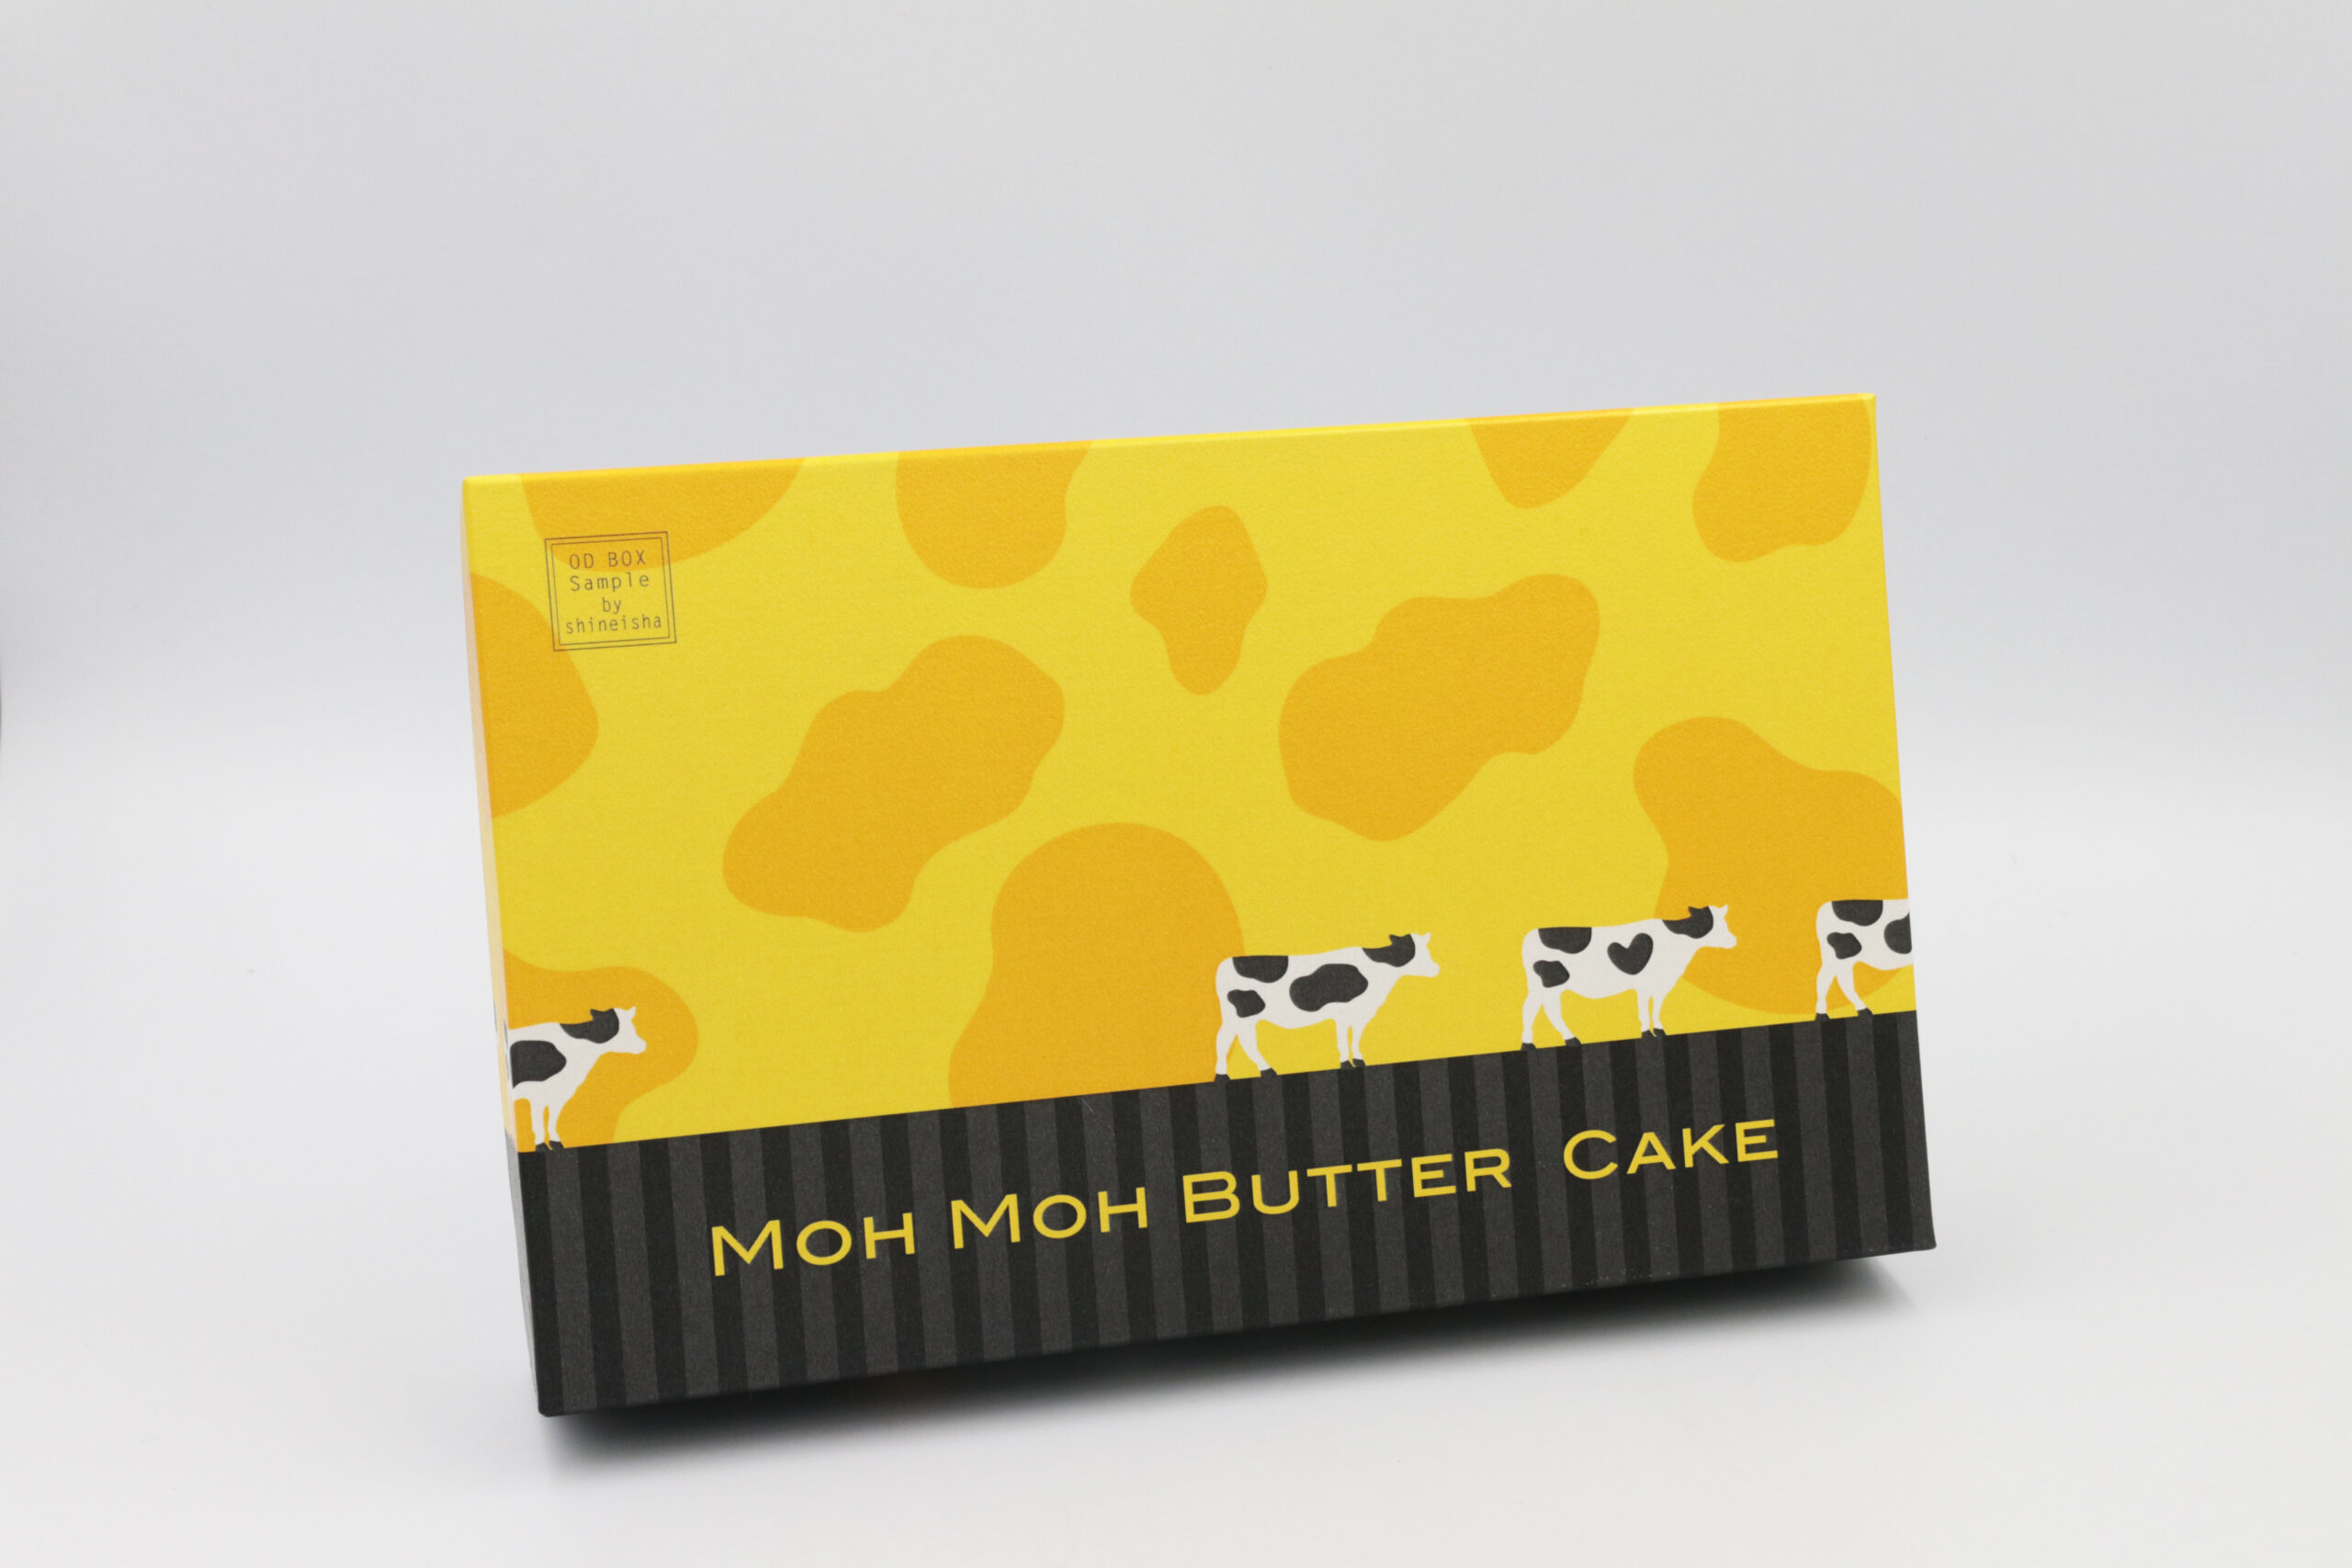 Moh Moh Butter Cake